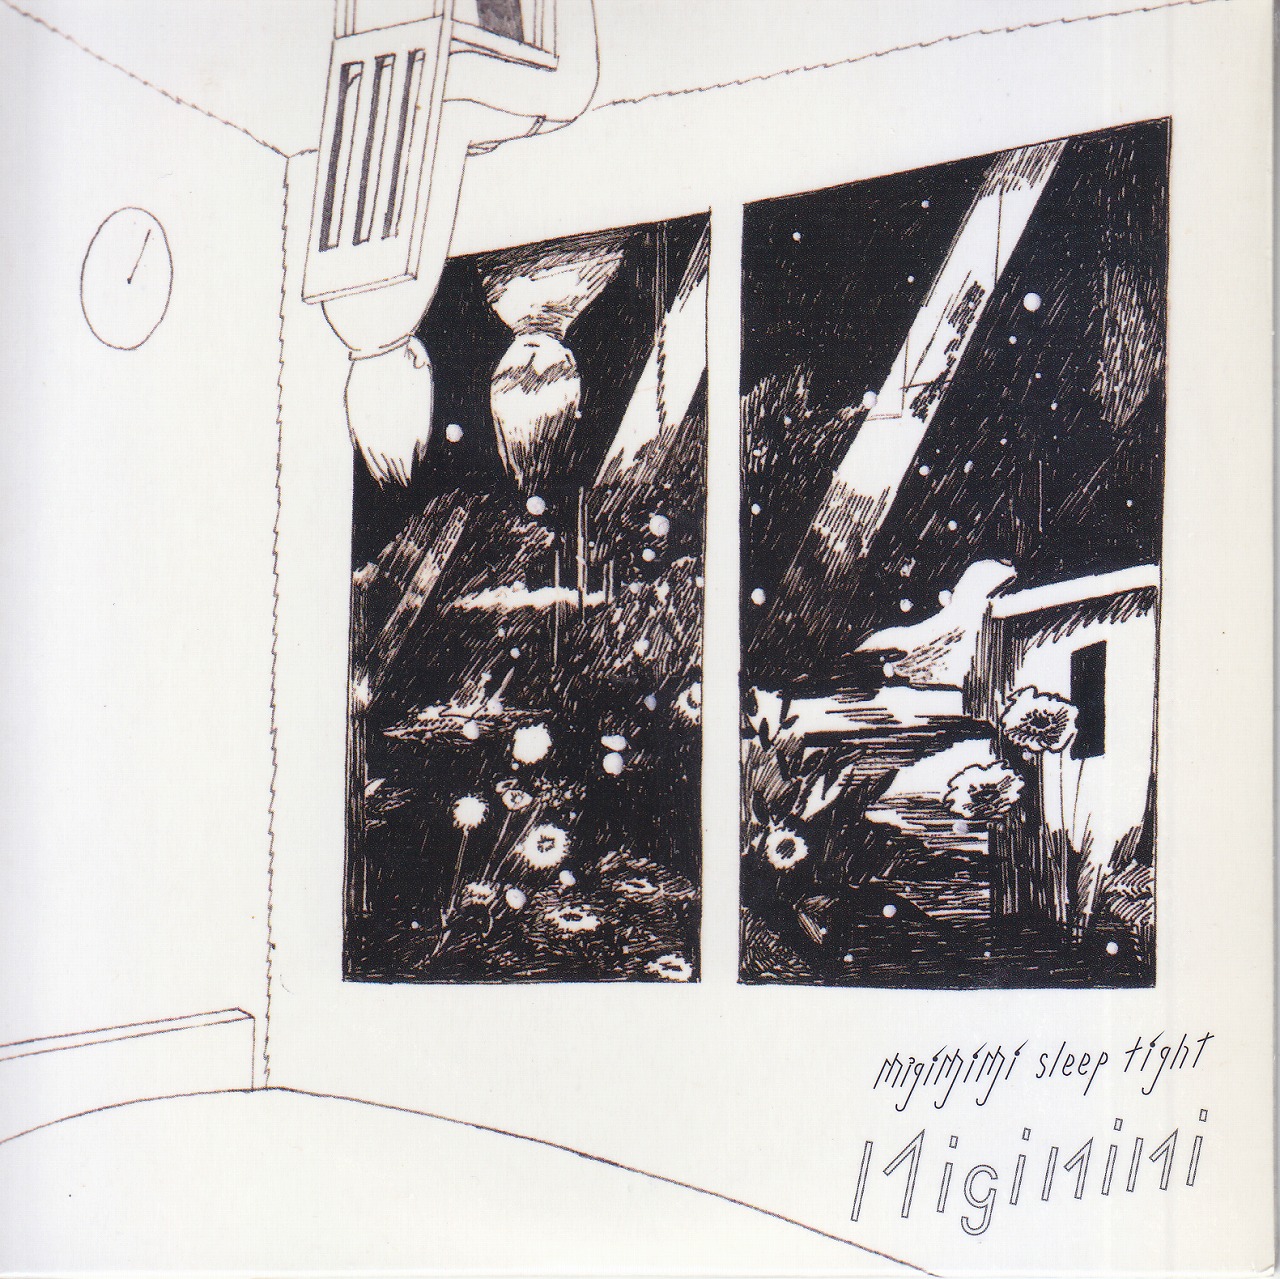 Migimimi sleep tight ( ミギミミスリープタイト )  の CD migimimisleeptight